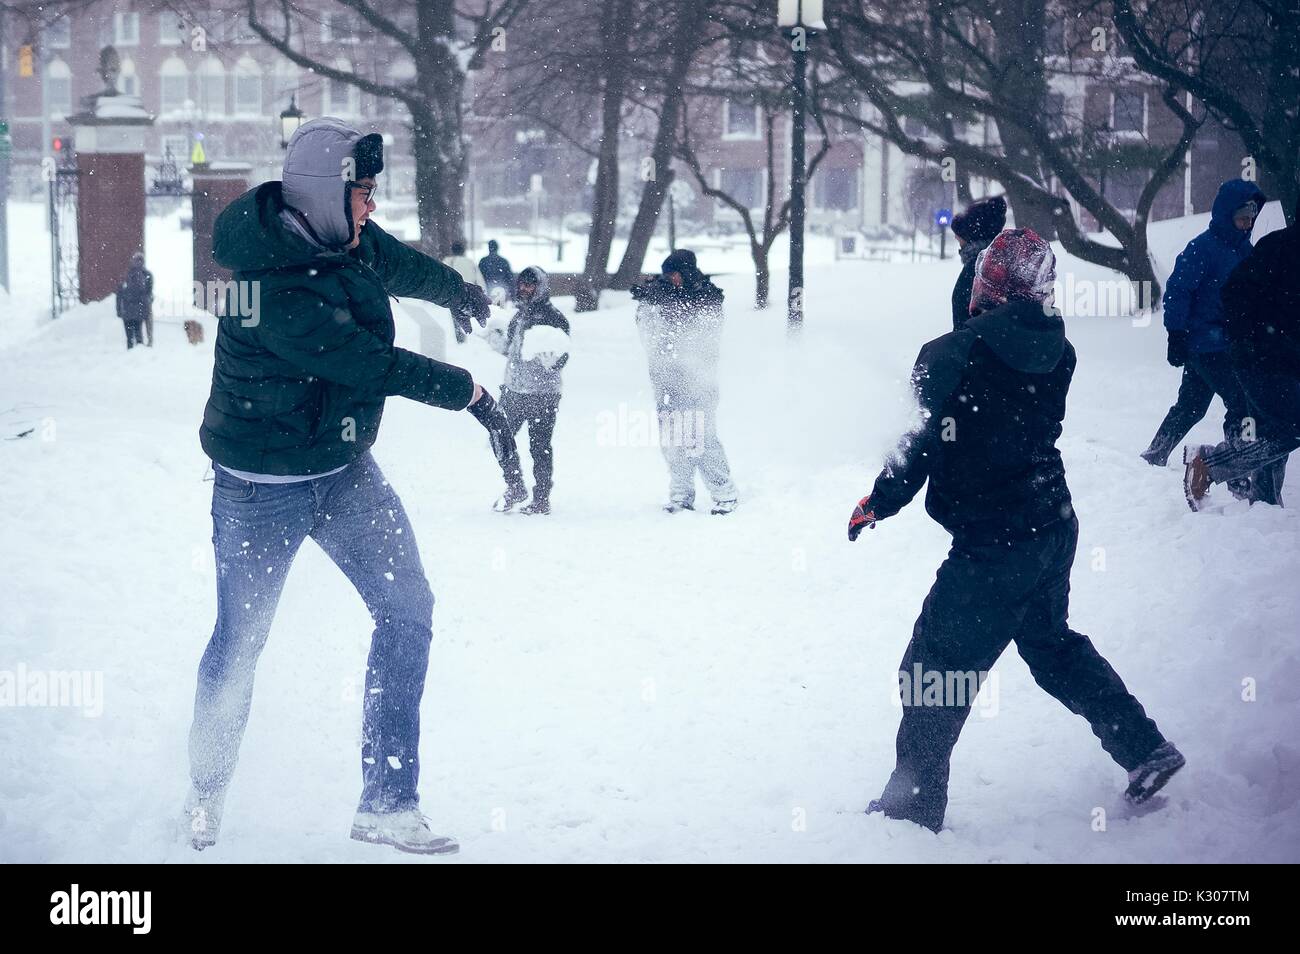 Los estudiantes conseguir afectados por bolas de nieve como otros jugar y correr durante una enorme bola de nieve en un día de nieve en la Universidad Johns Hopkins, Baltimore, Maryland, en 2016. Foto de stock